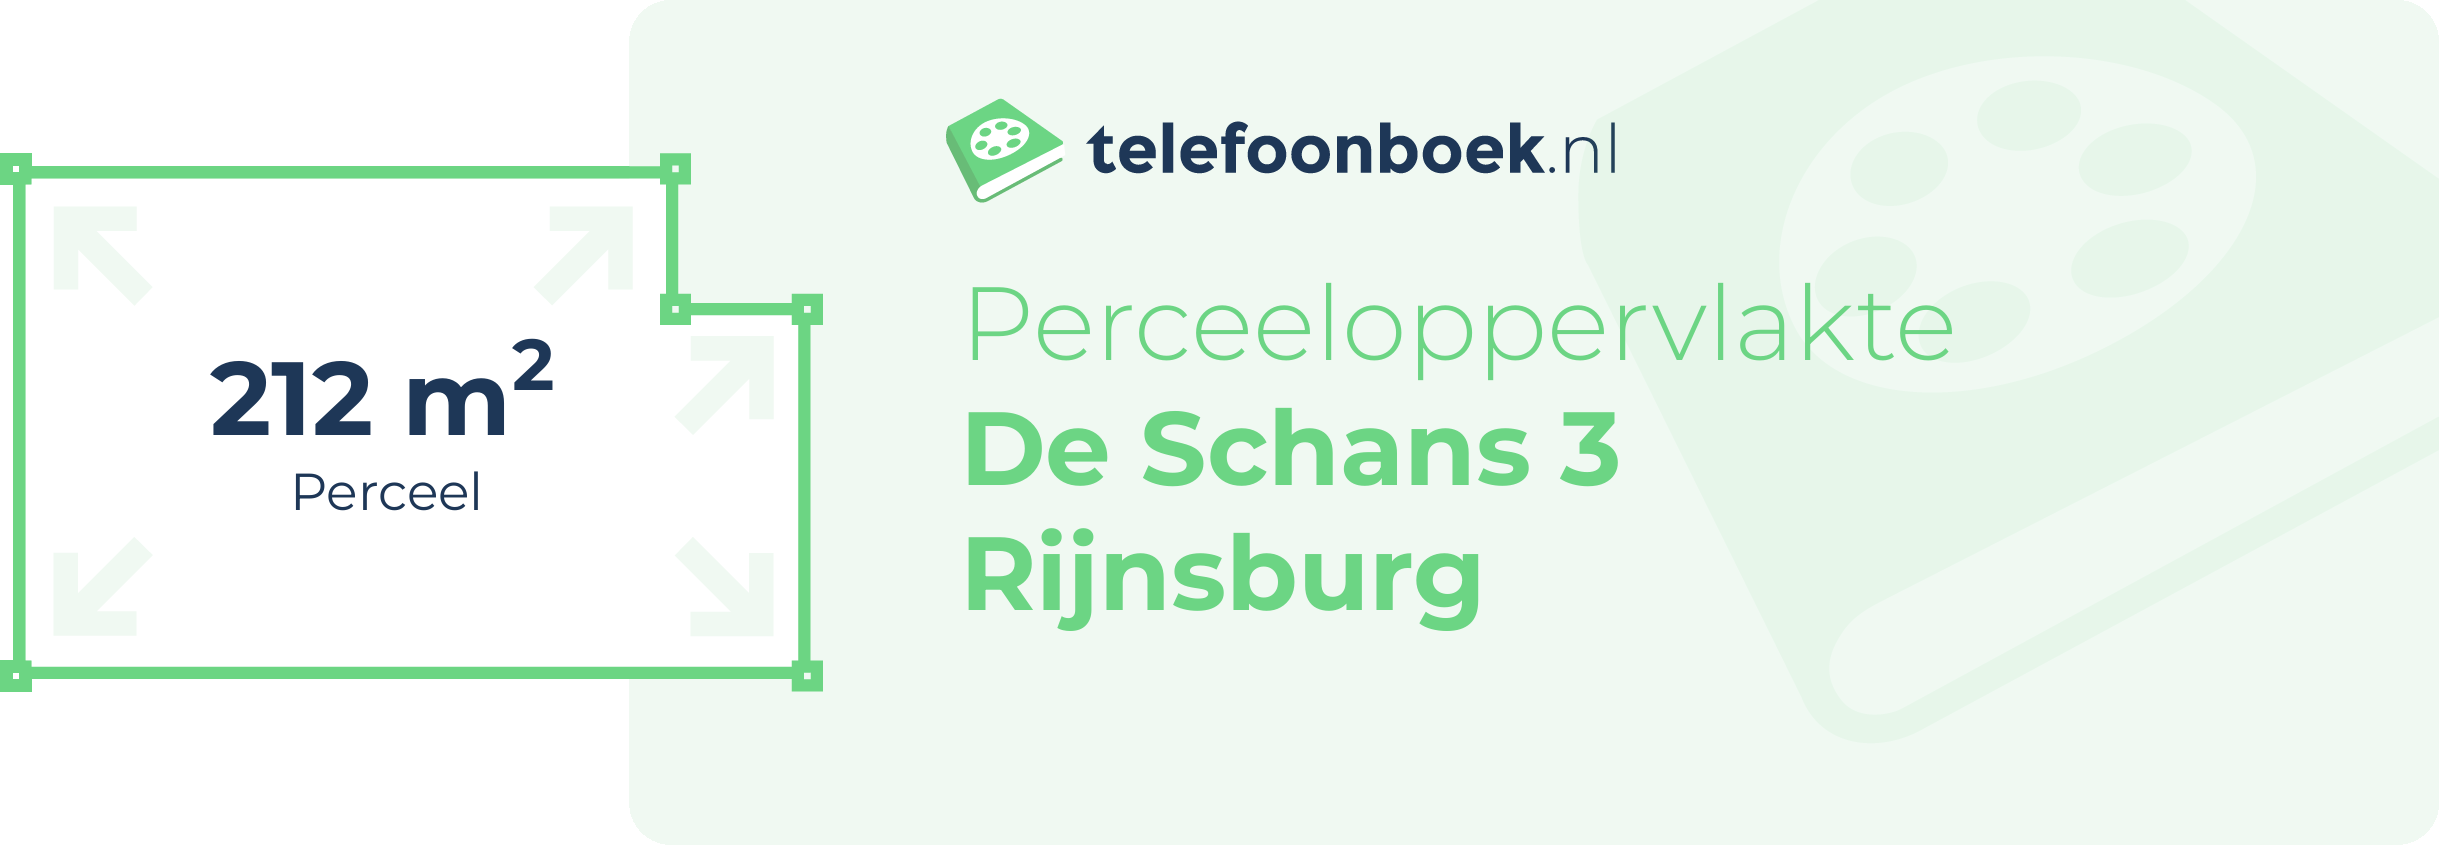 Perceeloppervlakte De Schans 3 Rijnsburg